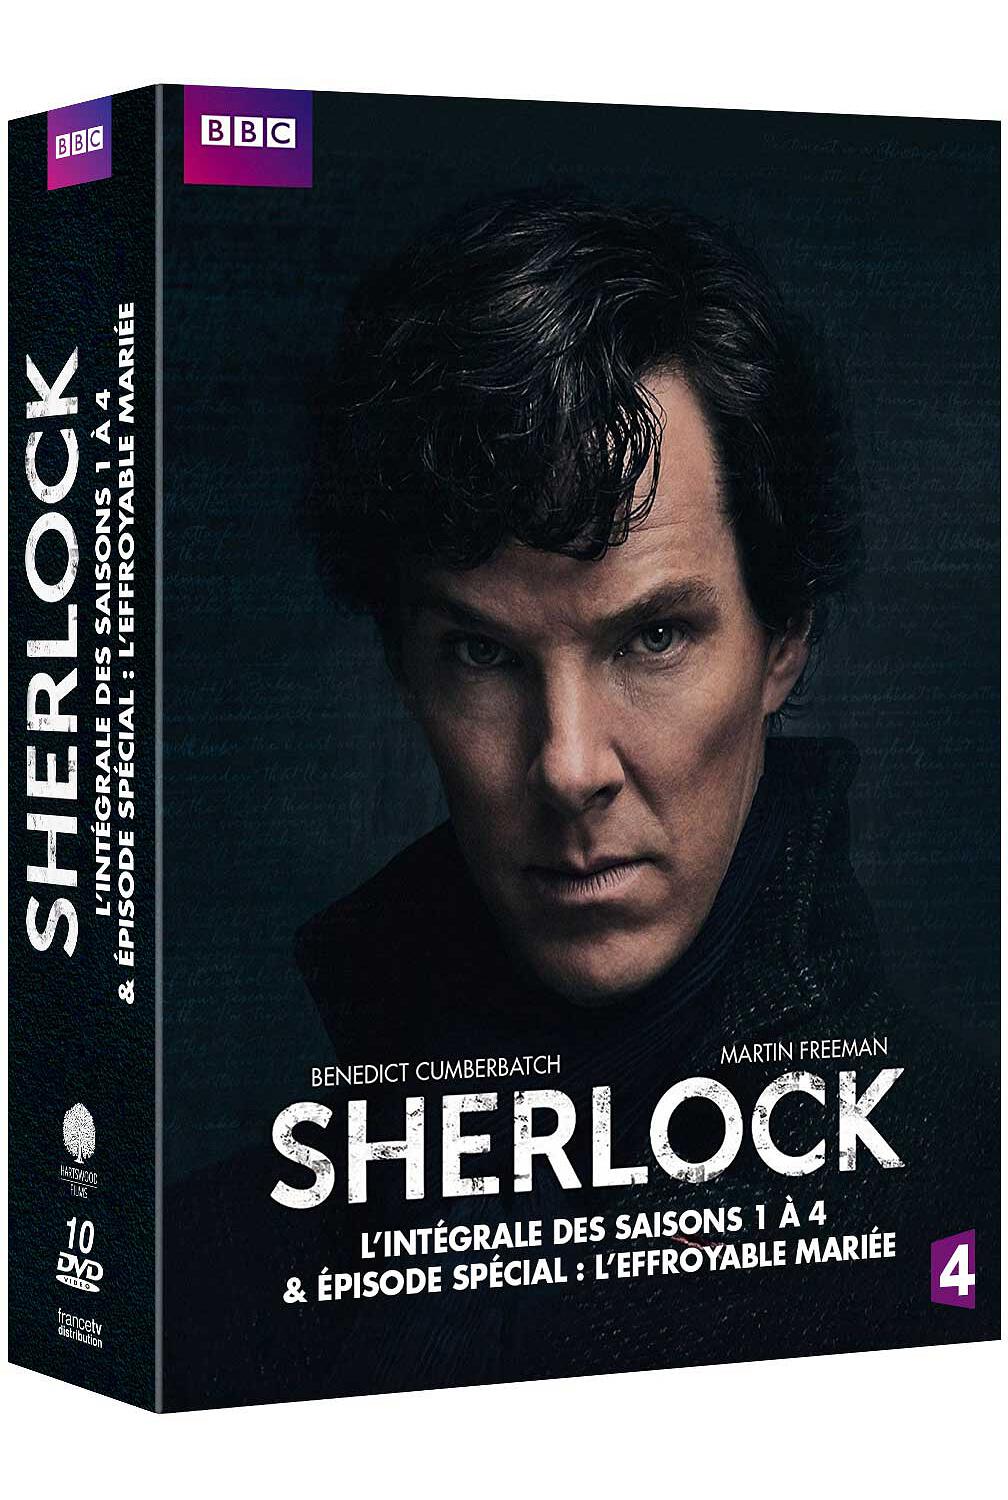 Couverture de : Sherlock, saison 1